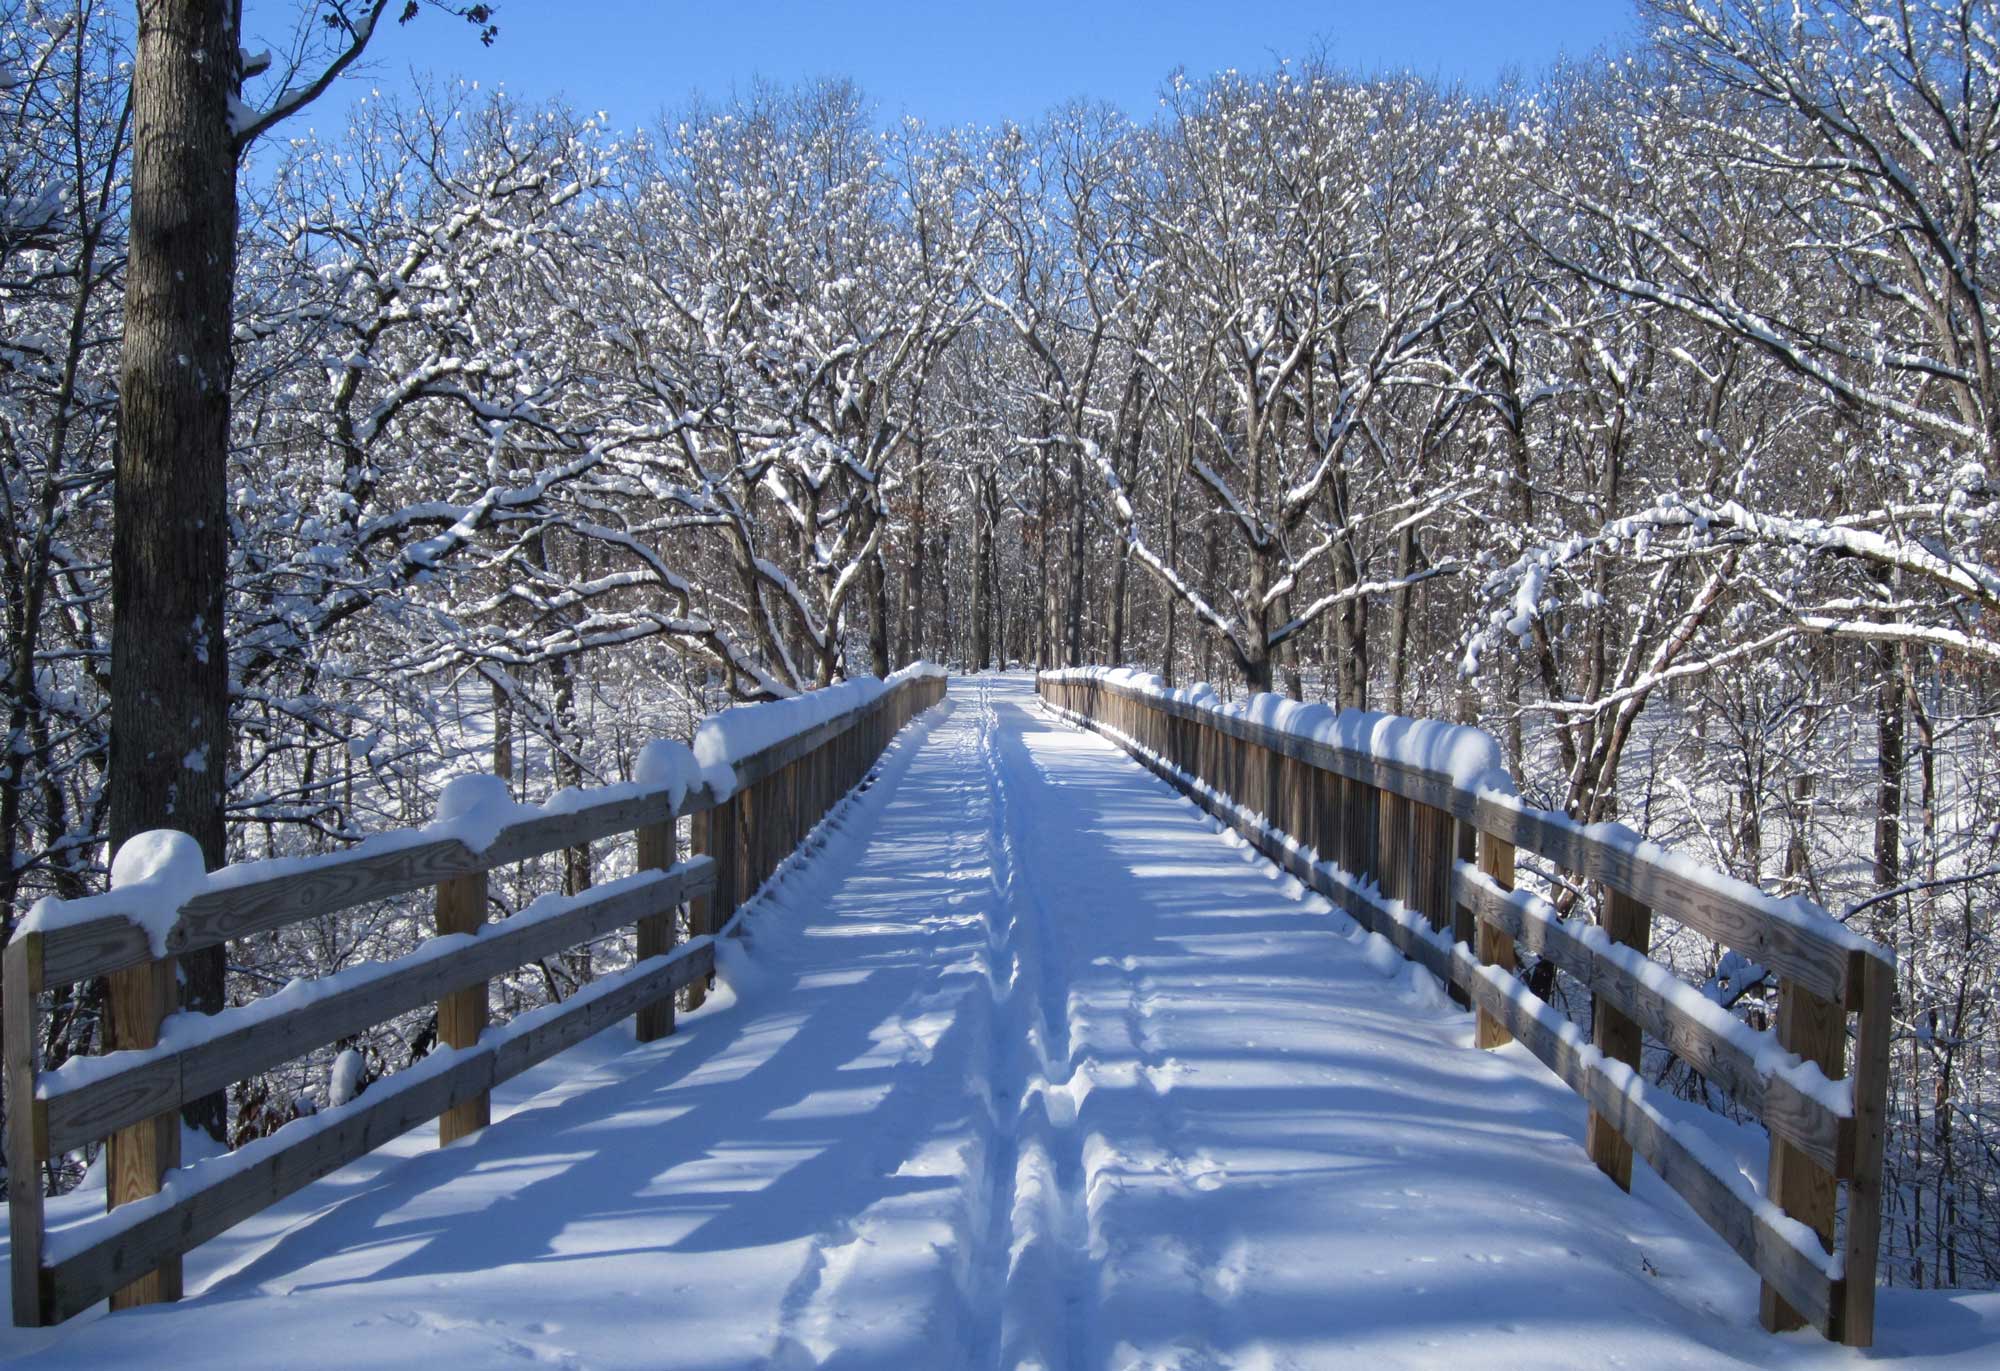 A snow-covered trail bridge.